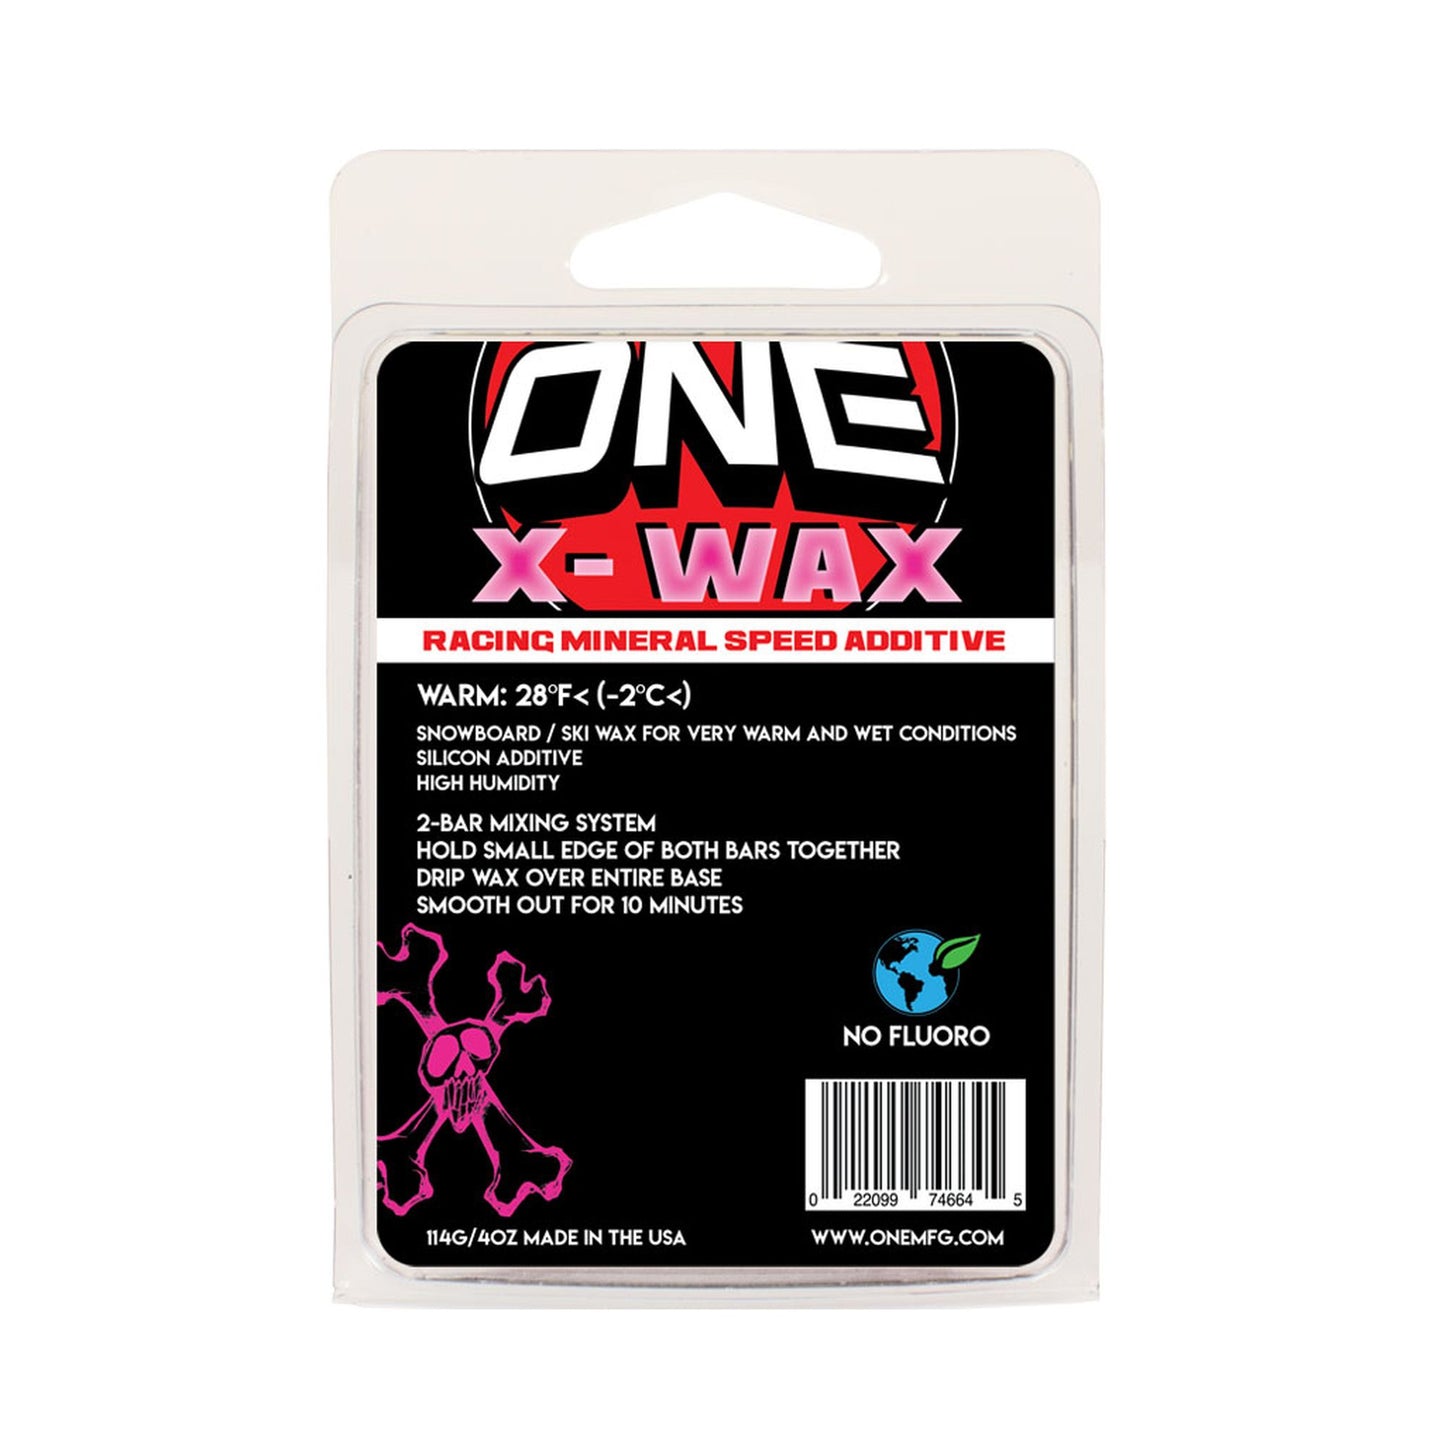 Oneball X-Wax 110g Snow Wax WARM - 32F to 26F 110 Wax